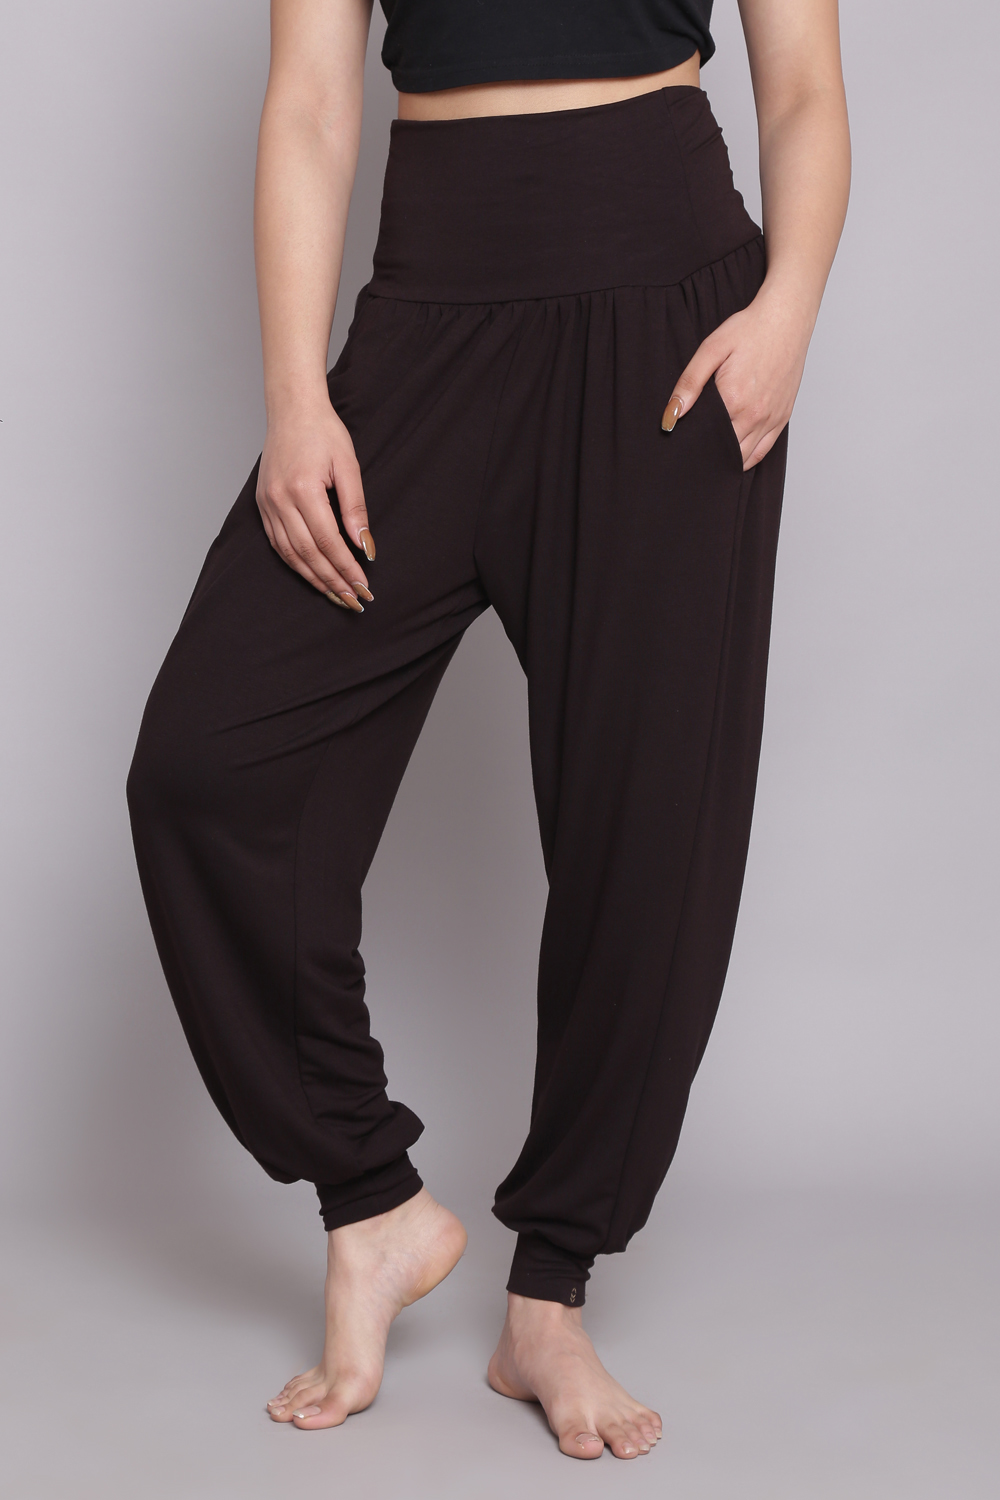 Buy Black Viscose Blend Harem Pants (Yoga Pants) for INR599.00